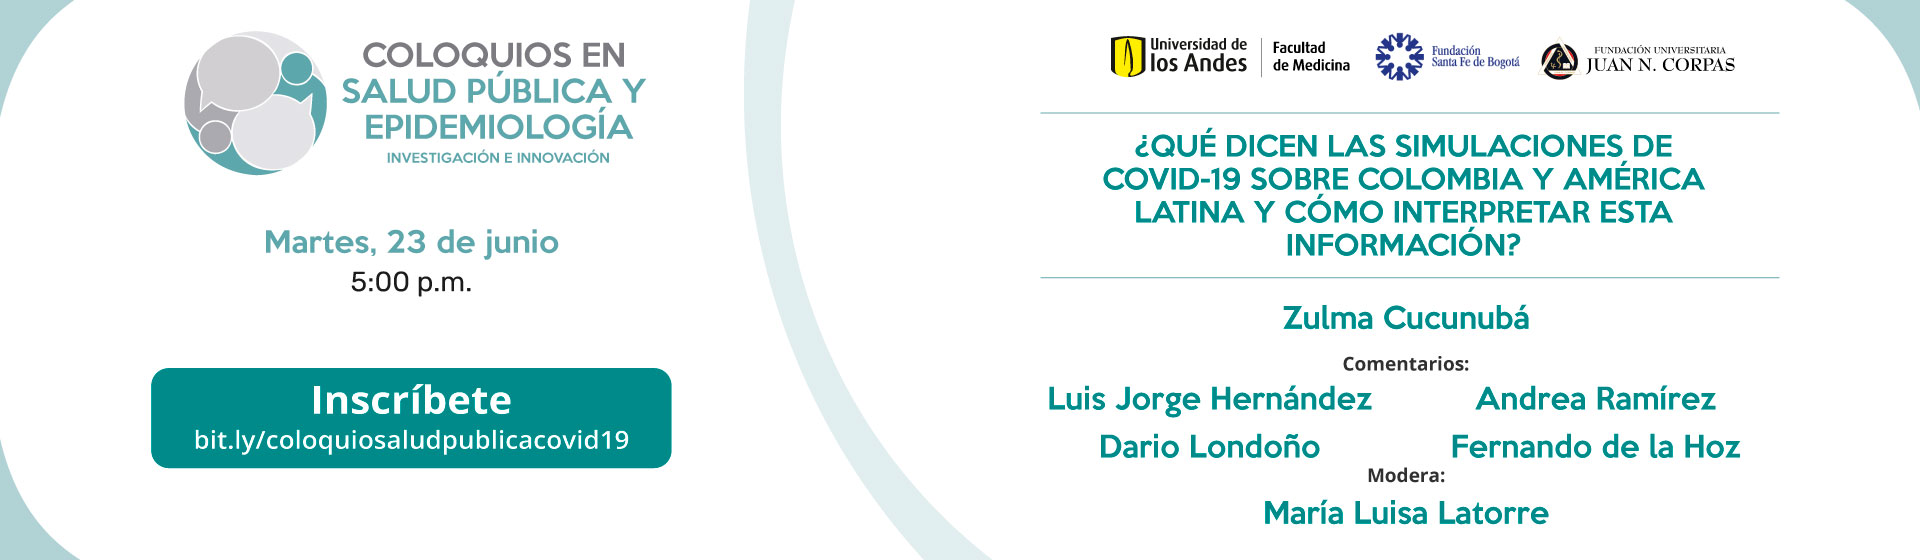 ¿Qué dicen las simulaciones de COVID-19 sobre Colombia y América Latina y cómo interpretar esta información?